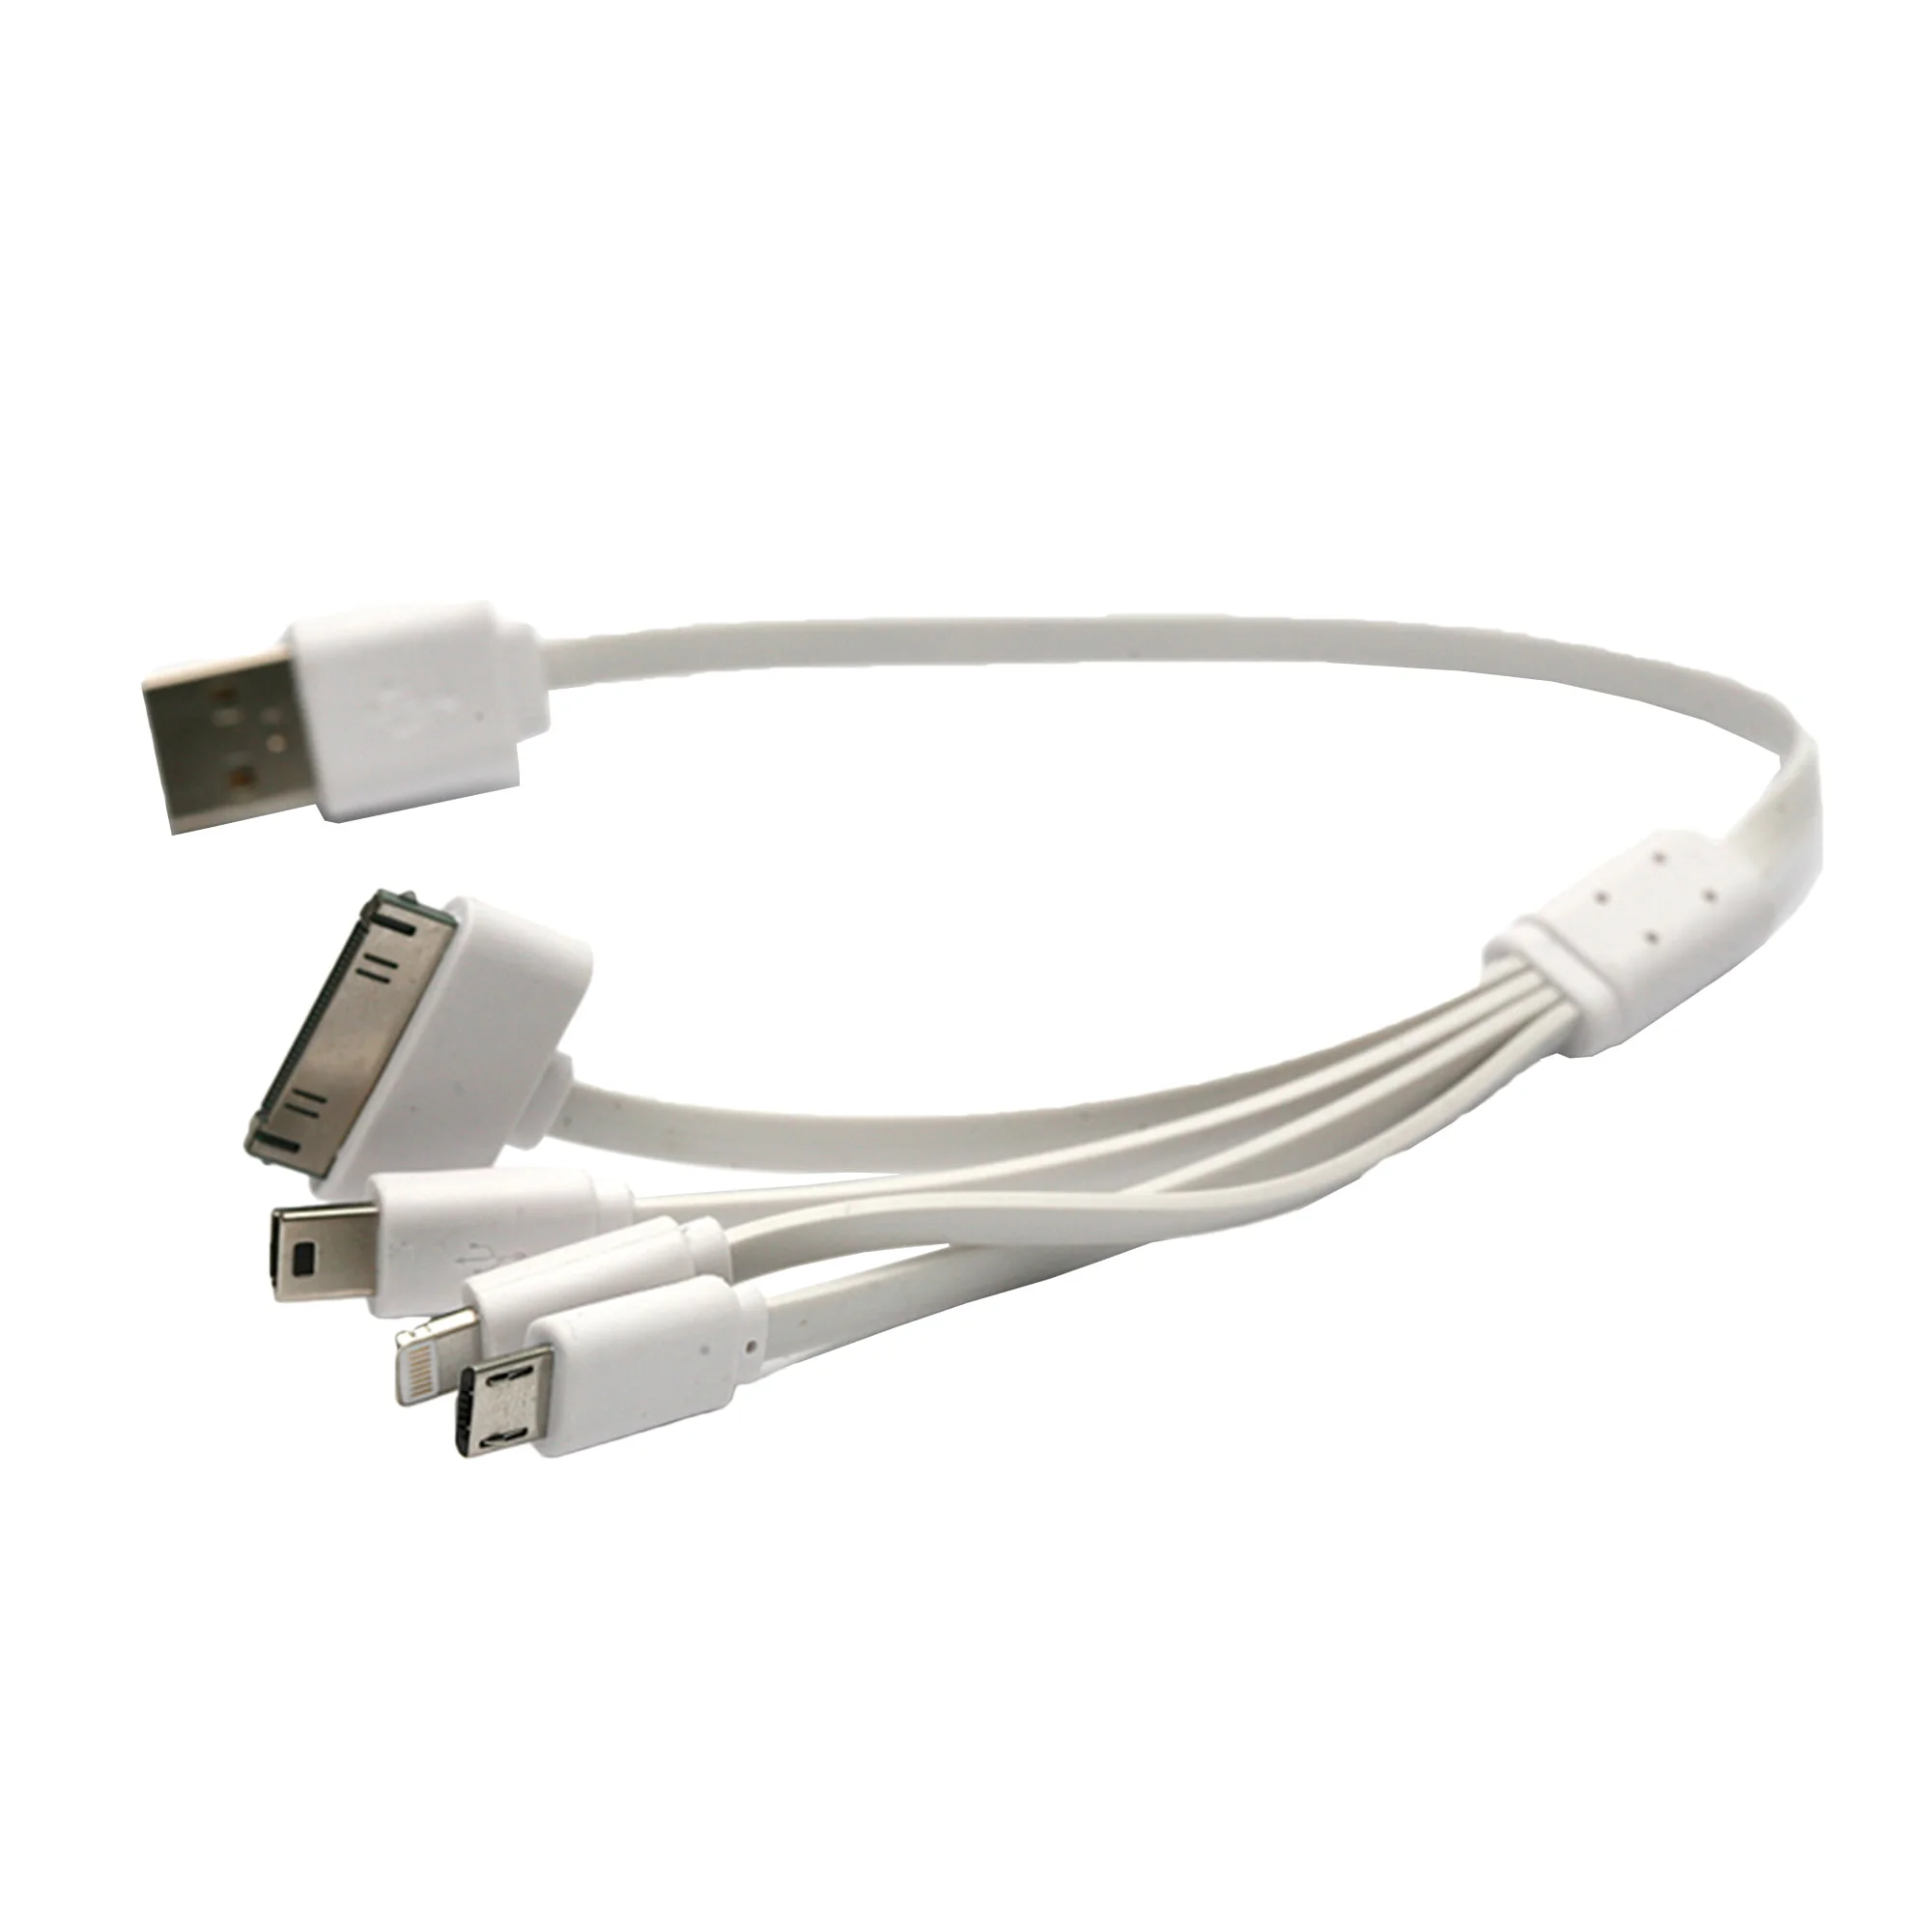 Кабель PowerPlant универсальный USB 2.0 AM - Mini Micro Lightning I-Pod 0.3м (KABUSBALL)